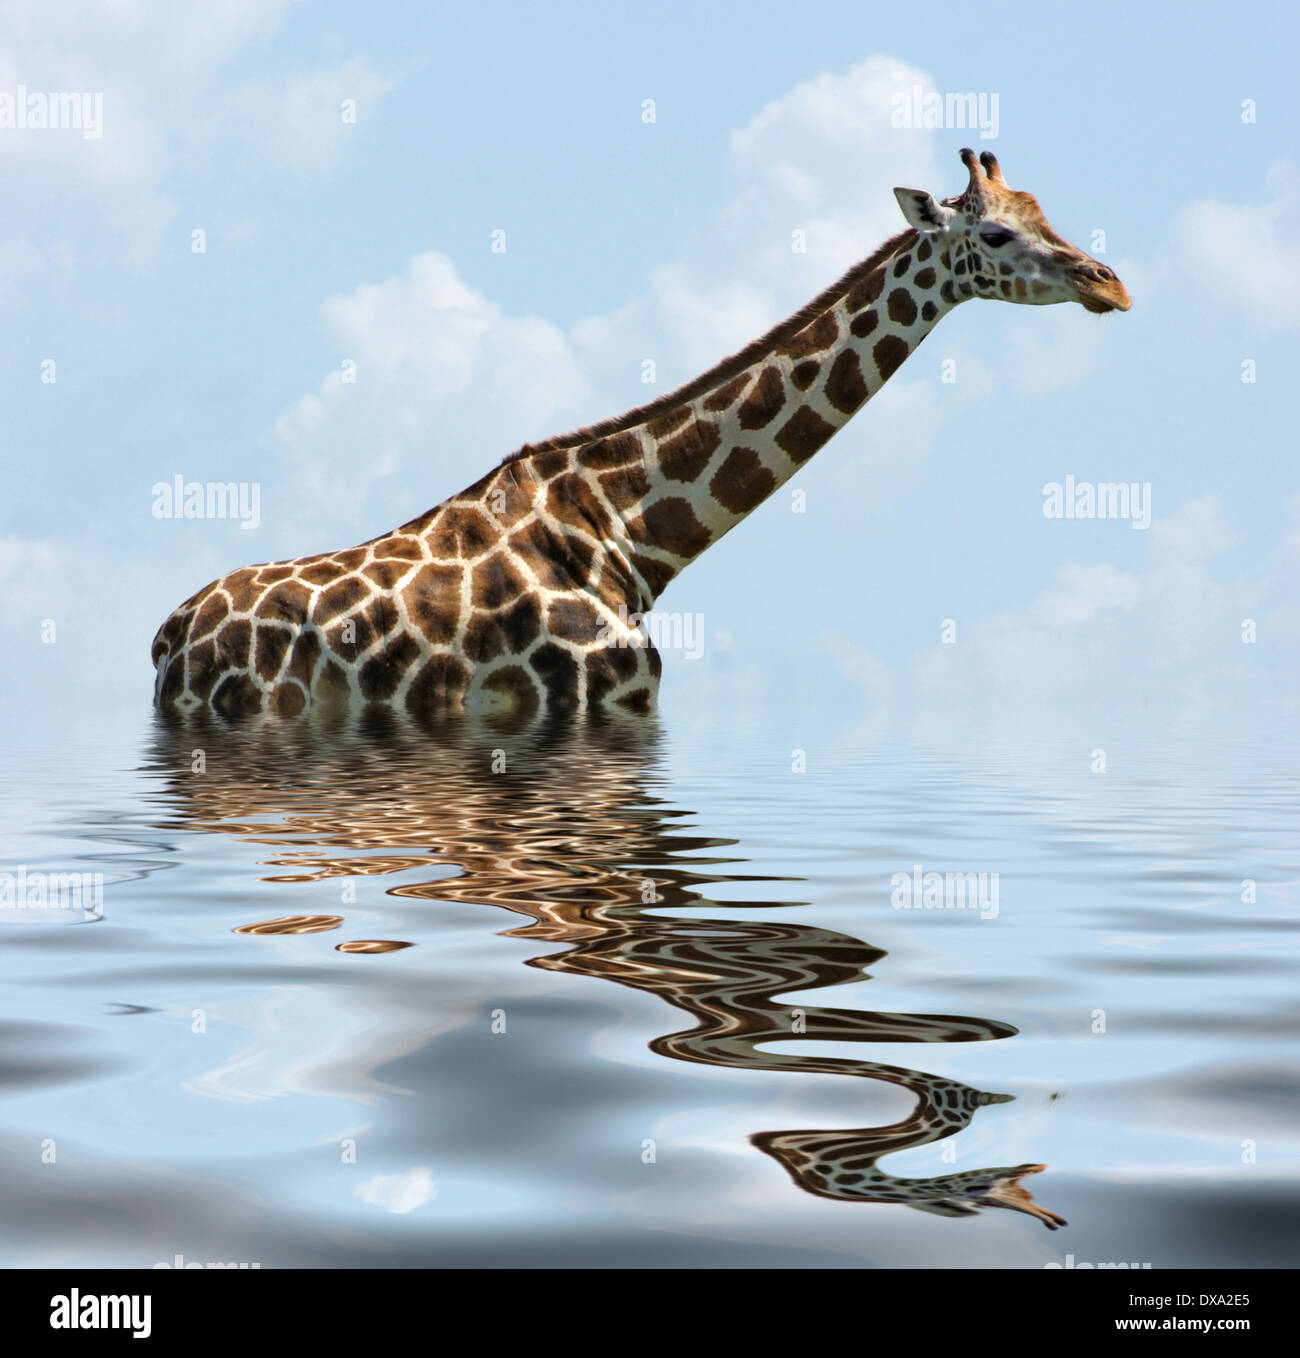 Une girafe Rothschild dans l'ambiance de l'eau réfléchissante Banque D'Images